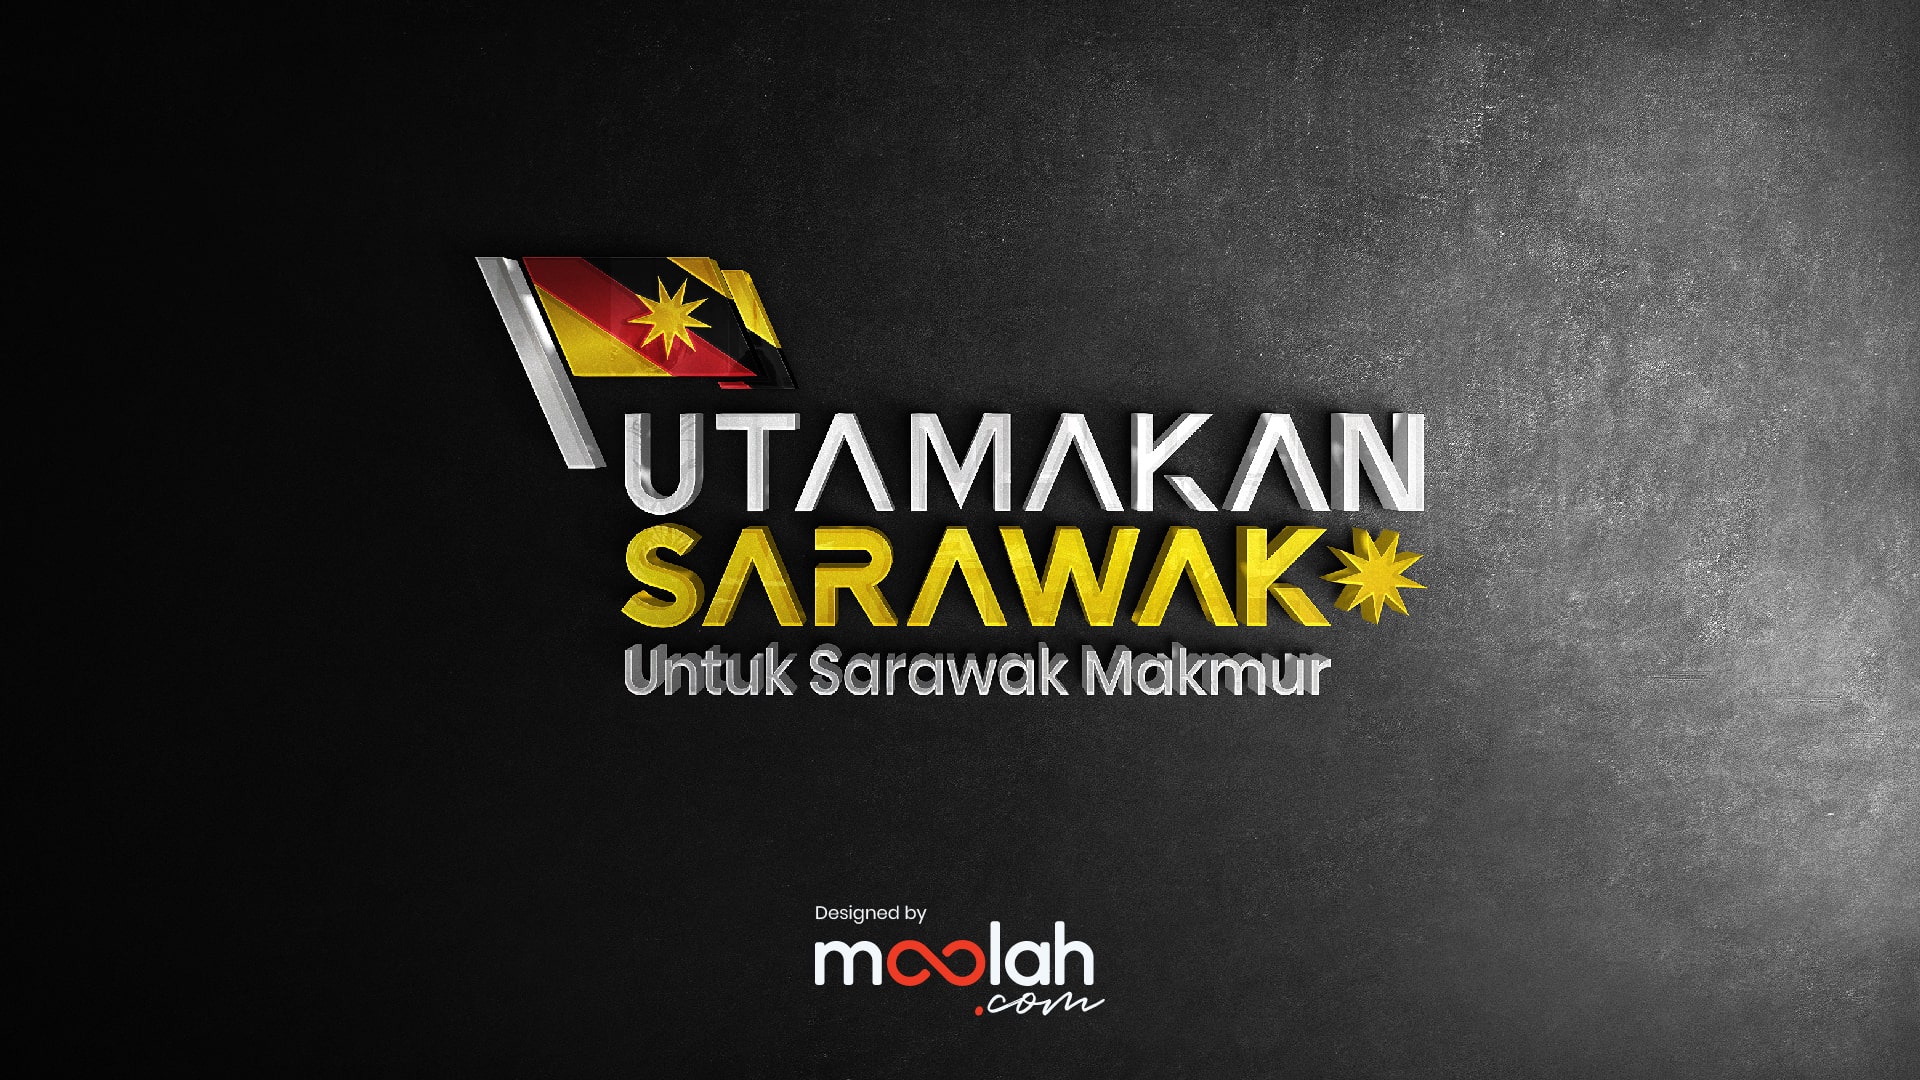 Utamakan Sarawak Logo Campaign 08 min Moolah Design